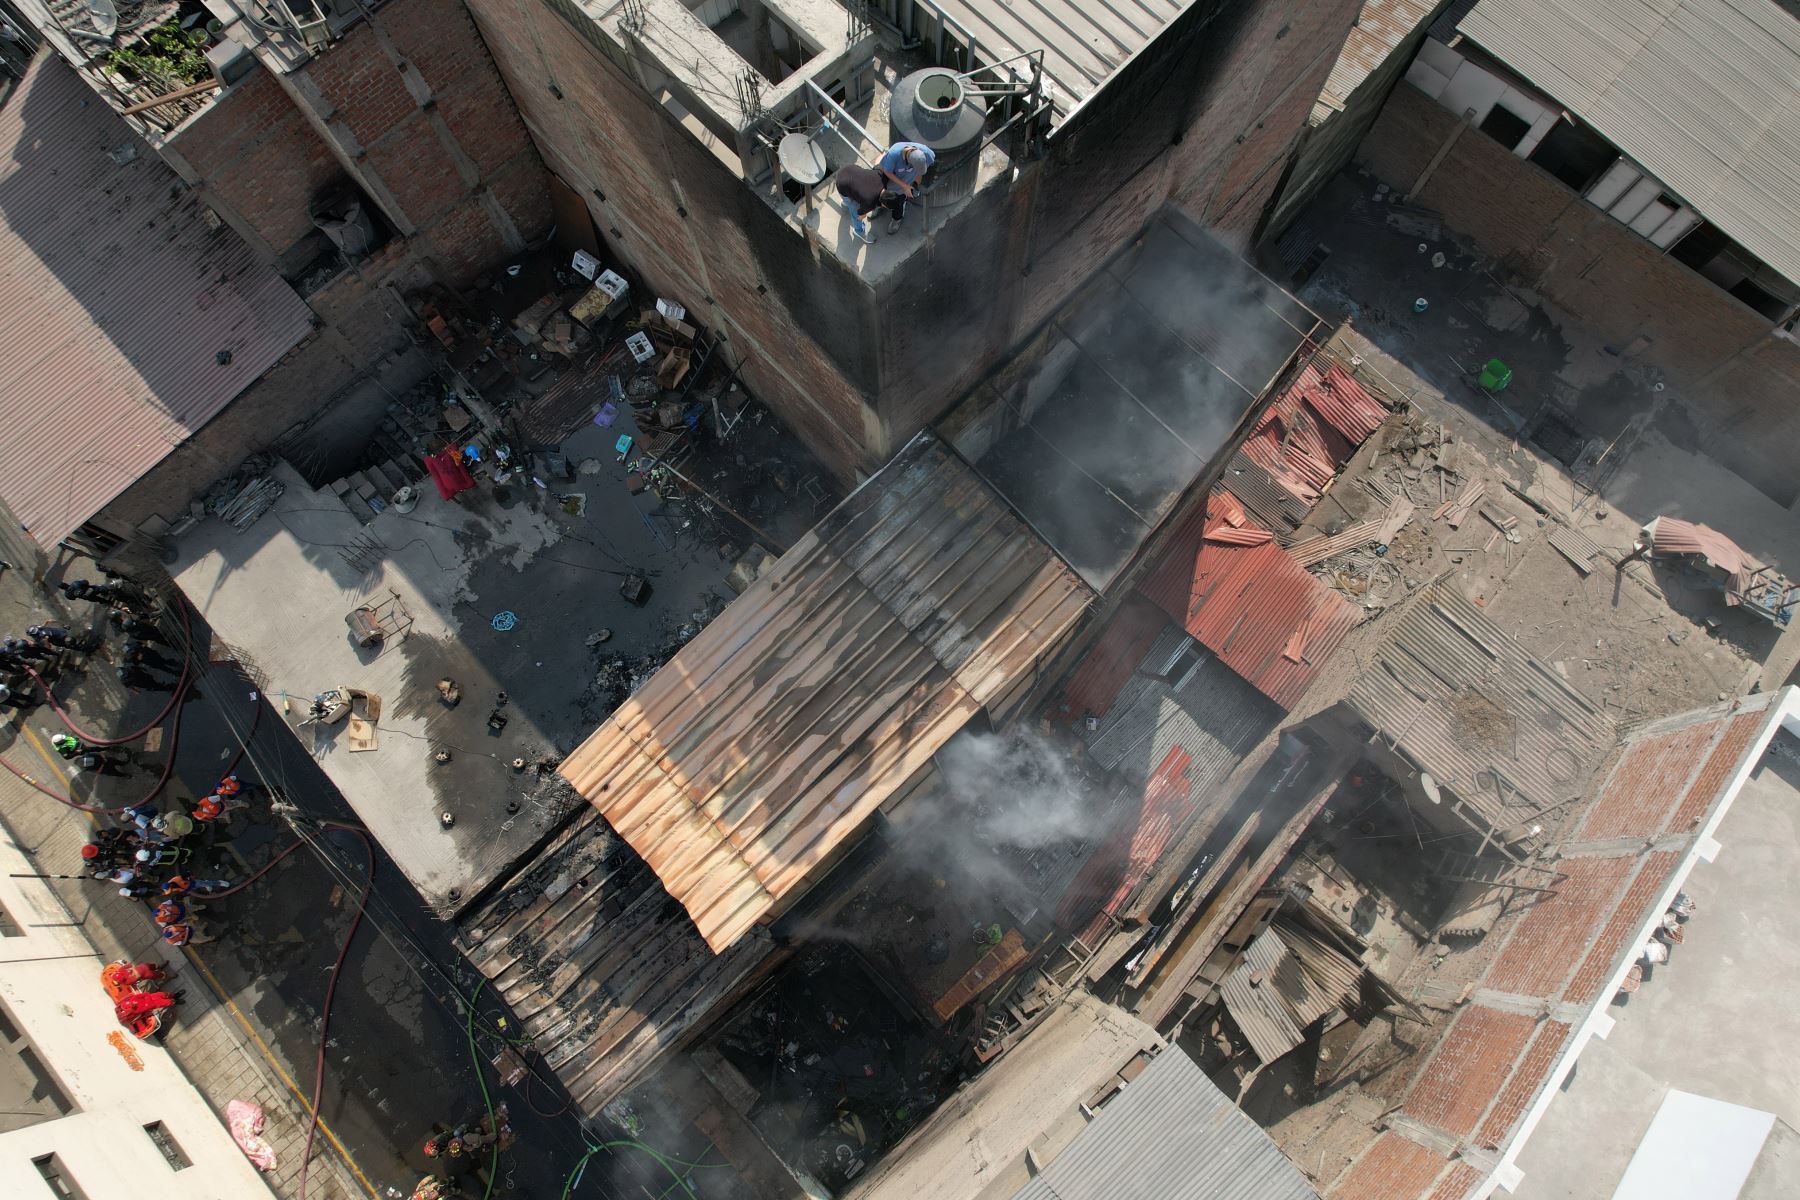 Incendio ocurrido en local ubicado en el cruce de los jirones Huanta con Puno en el Cercado de Lima fue controlado por el cuerpo de bomberos voluntarios. No se reportaron heridos ni fallecidos. Foto: ANDINA/Daniel Bracamonte